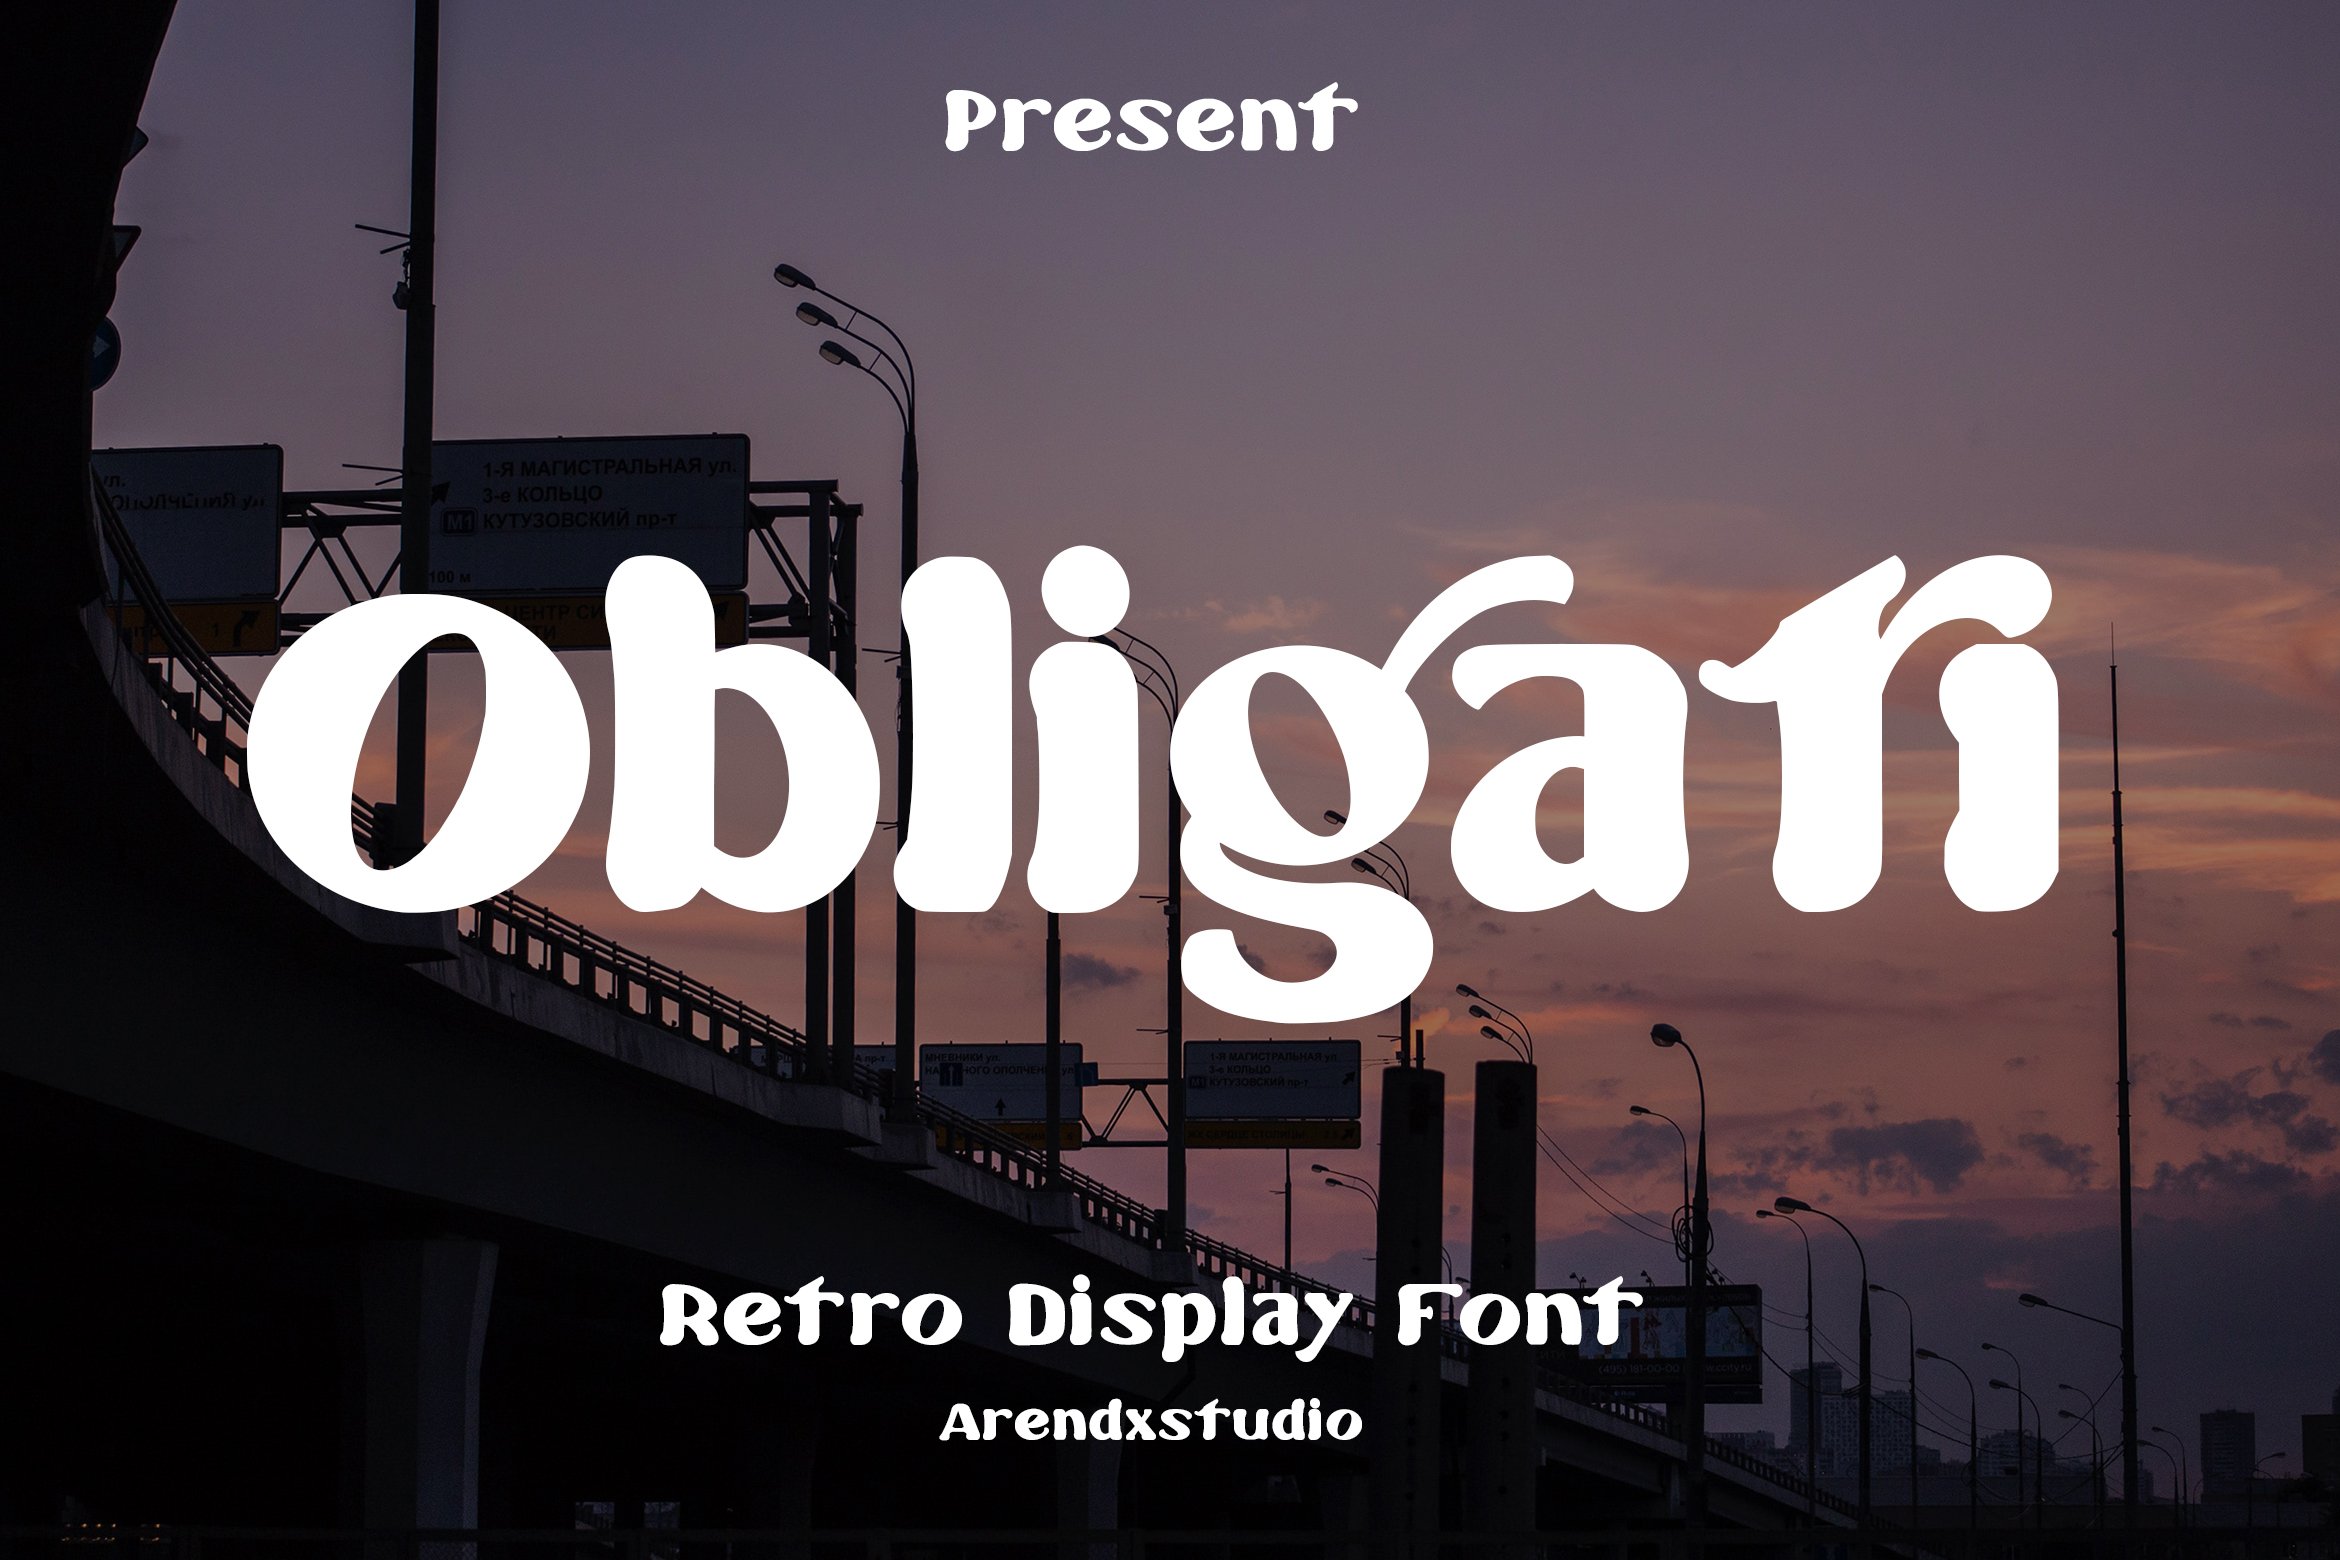 Obligati - Retro Display Font cover image.